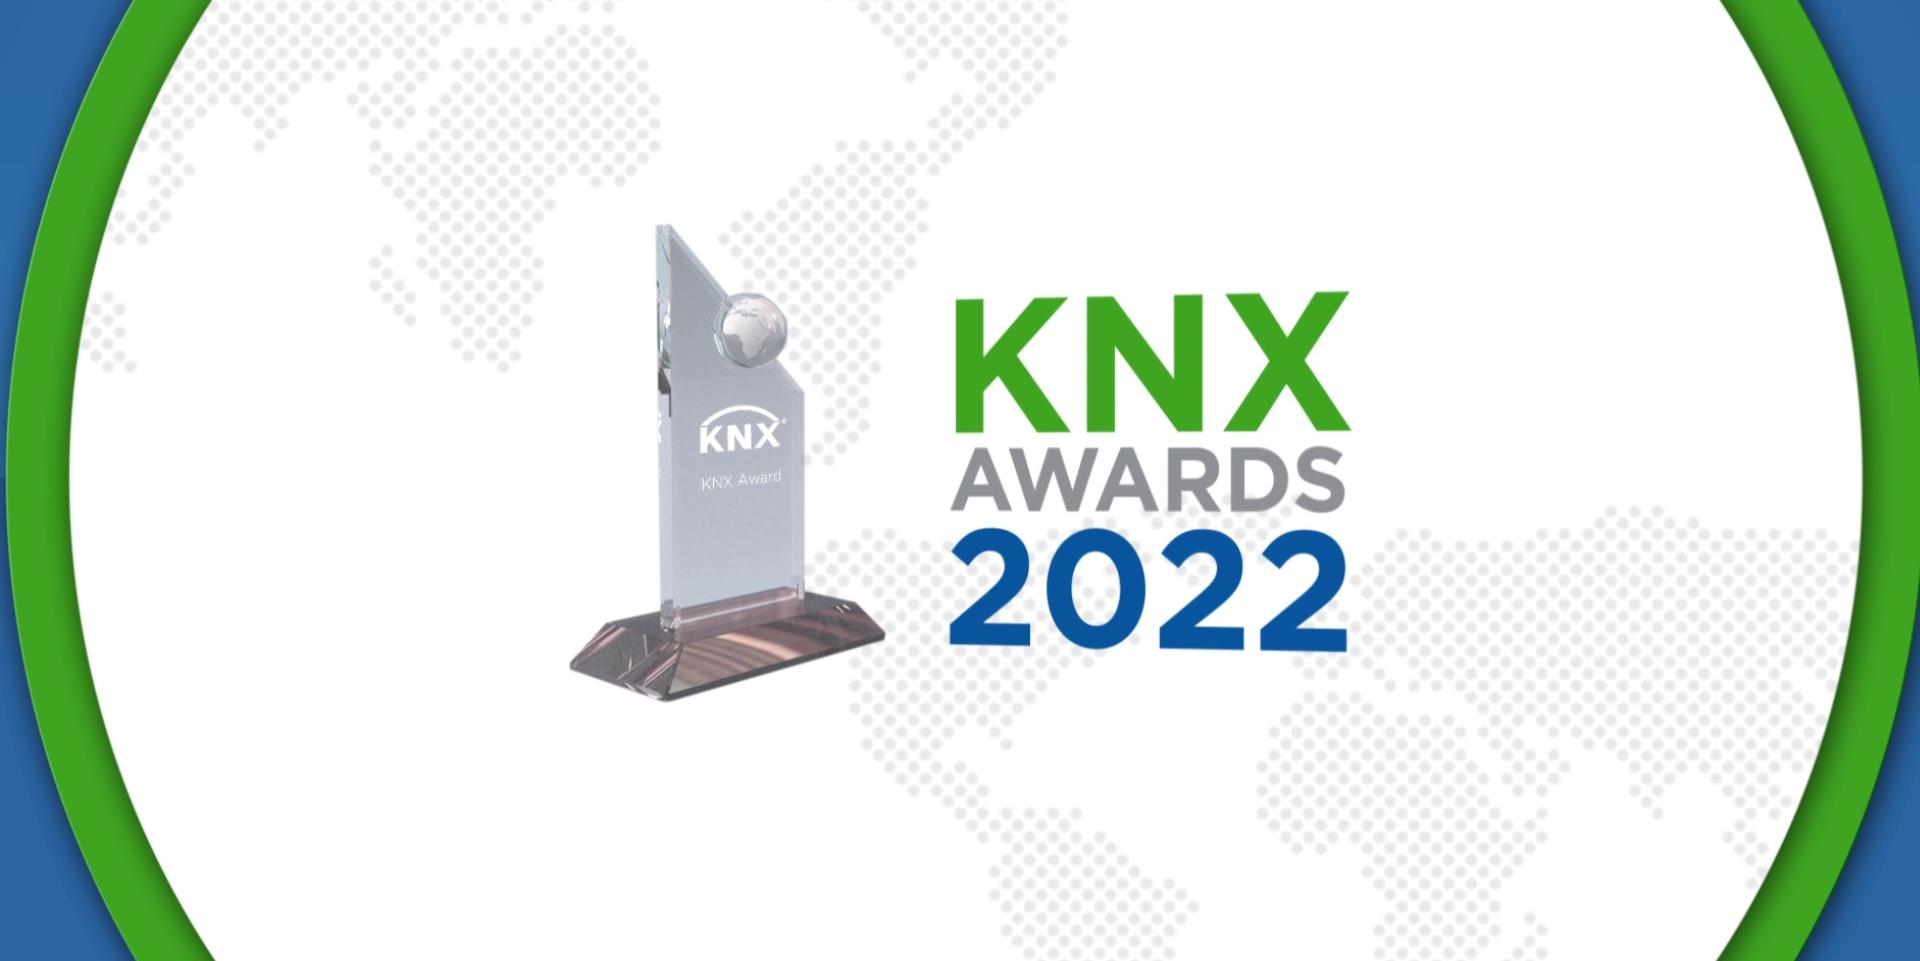 KNX Awards 2022: La 14ième édition célèbre les plus innovantes des utilisations de KNX dans le monde